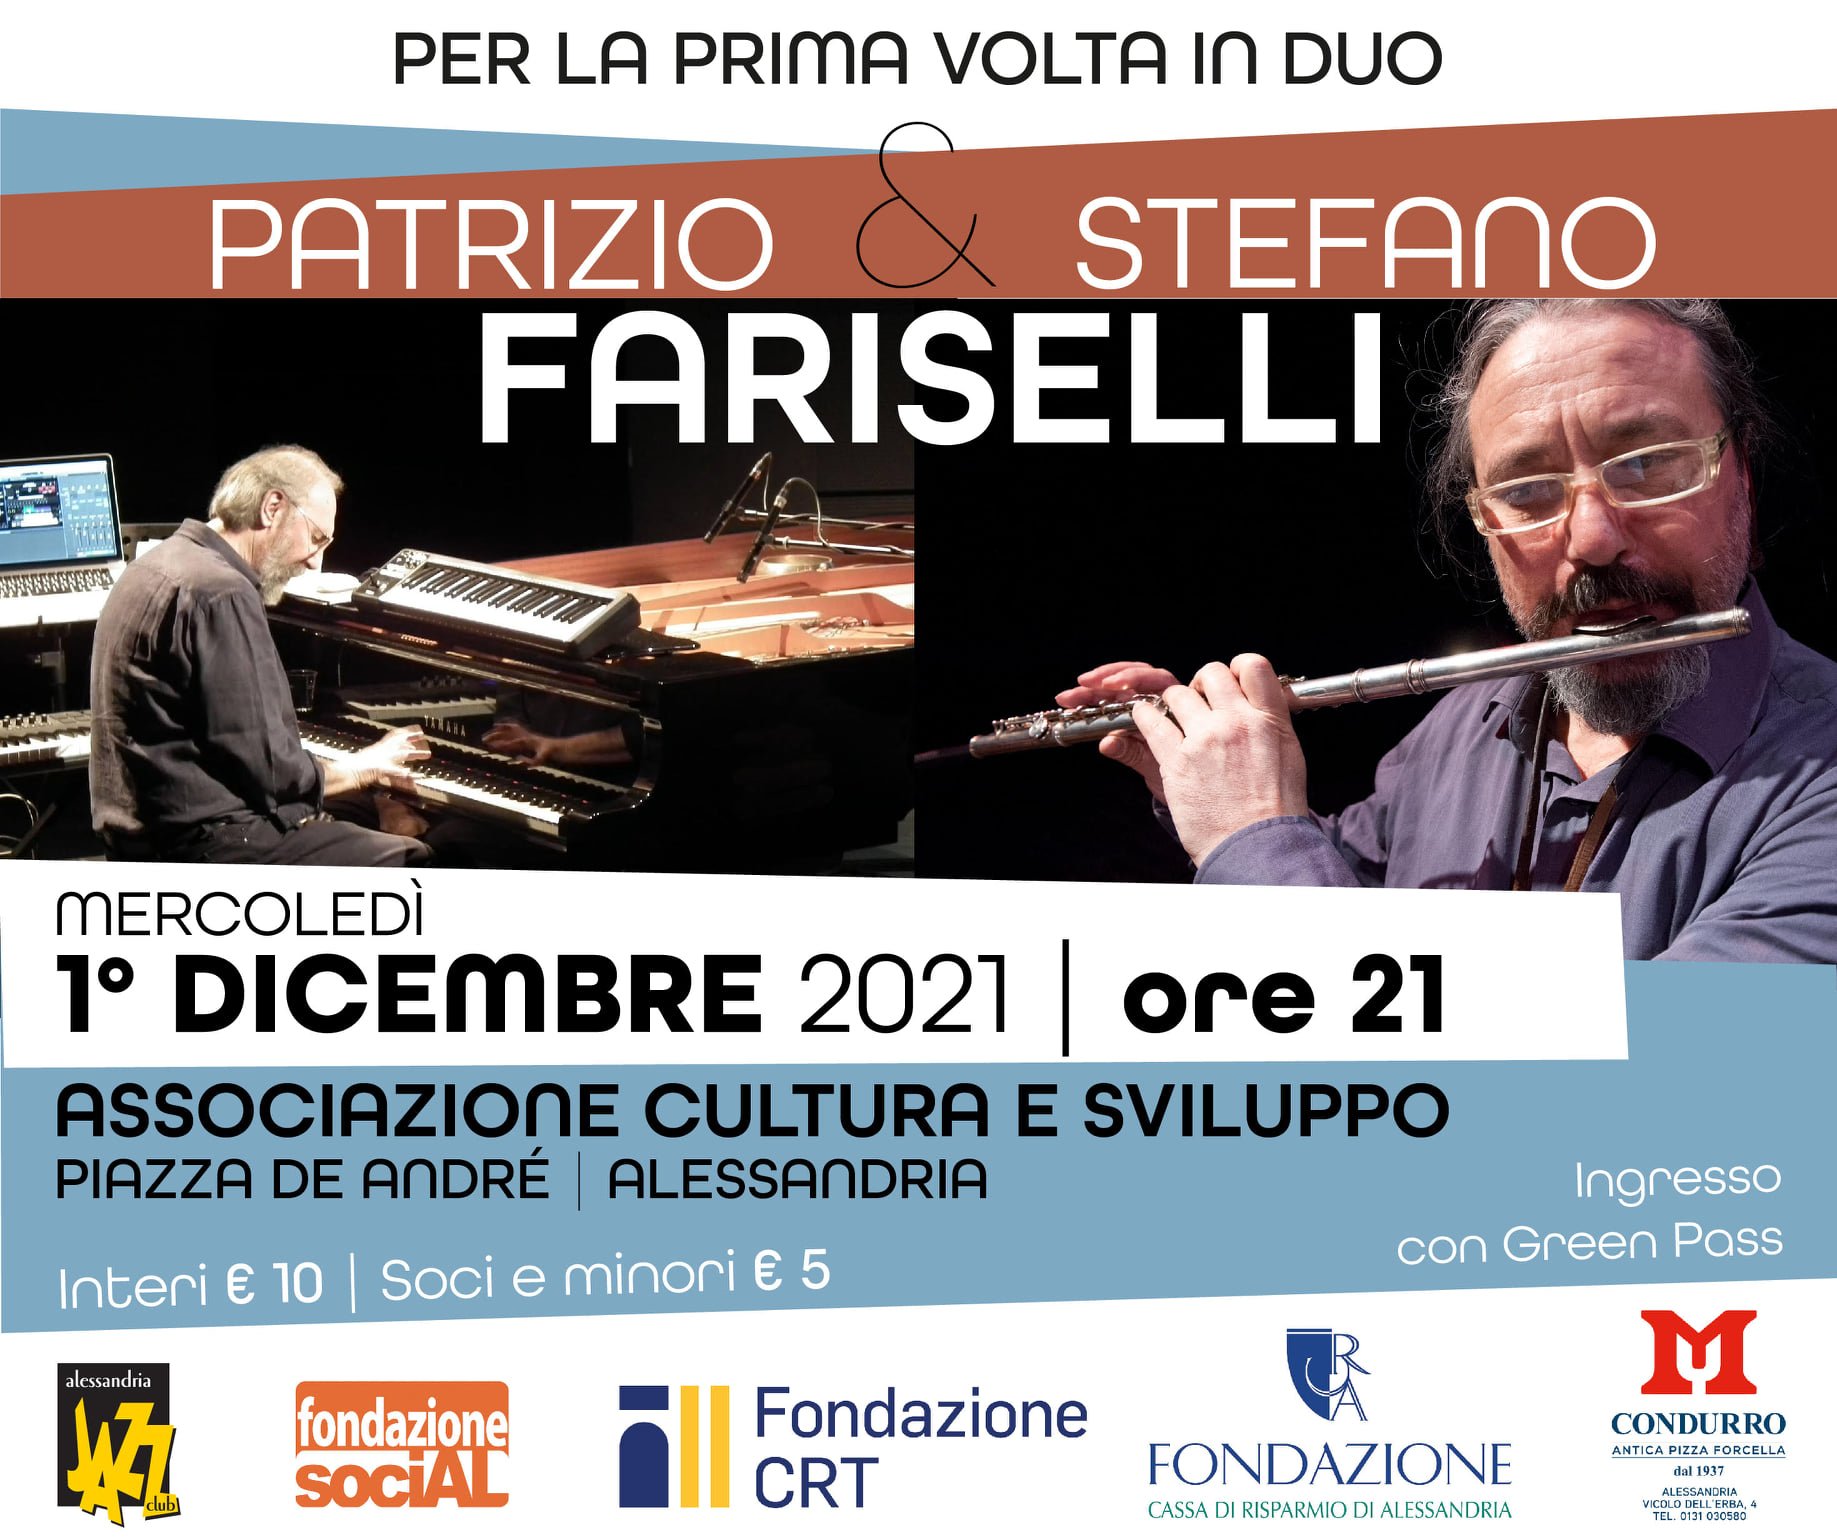 Patrizio e Stefano Fariselli live all’Associazione Cultura e Sviluppo